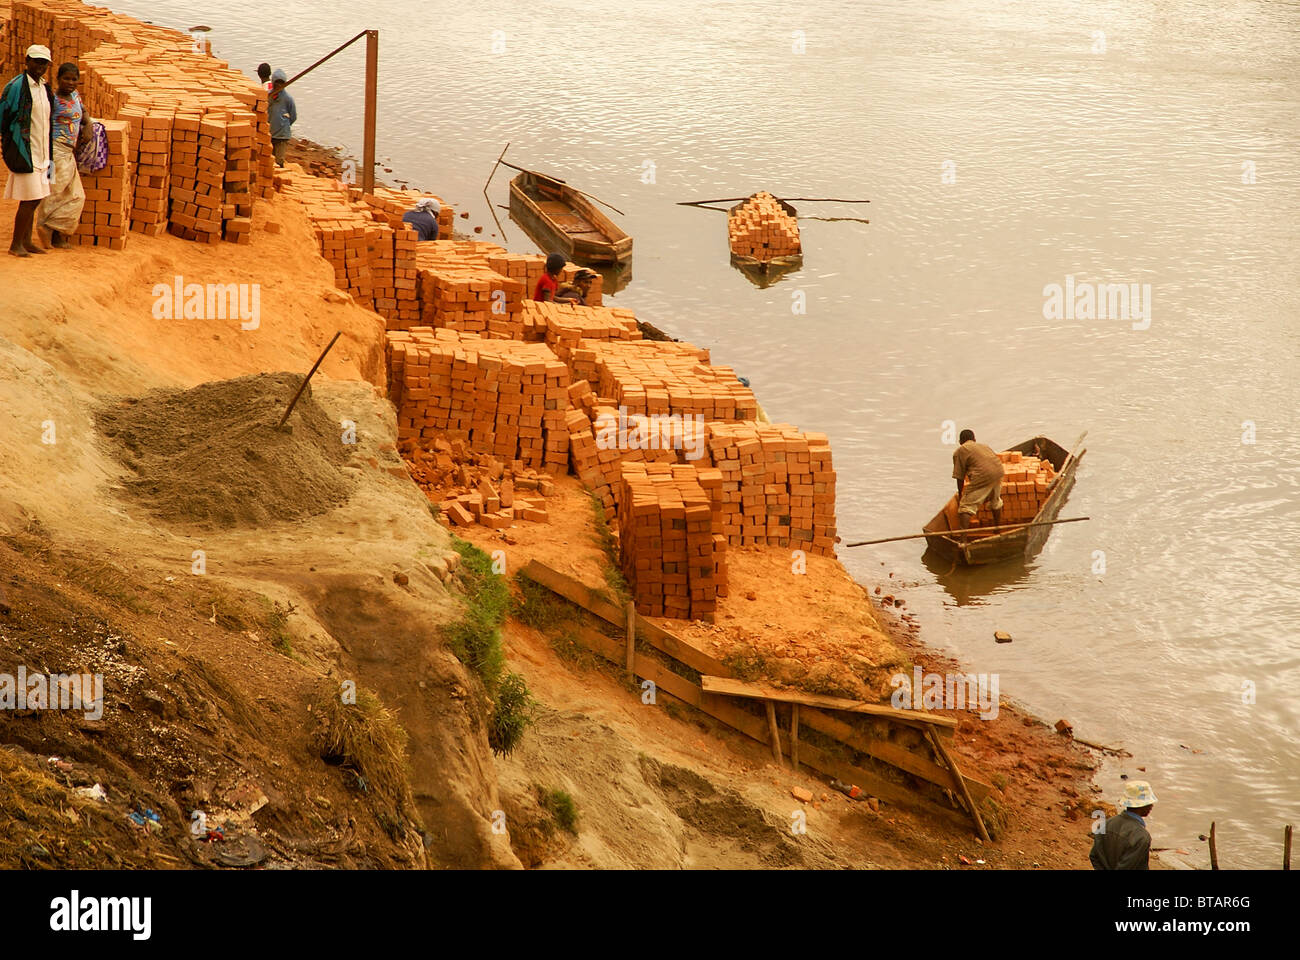 Madagascar, Analamanga region, clay brick production on the river bank near Antananarivo, Stock Photo